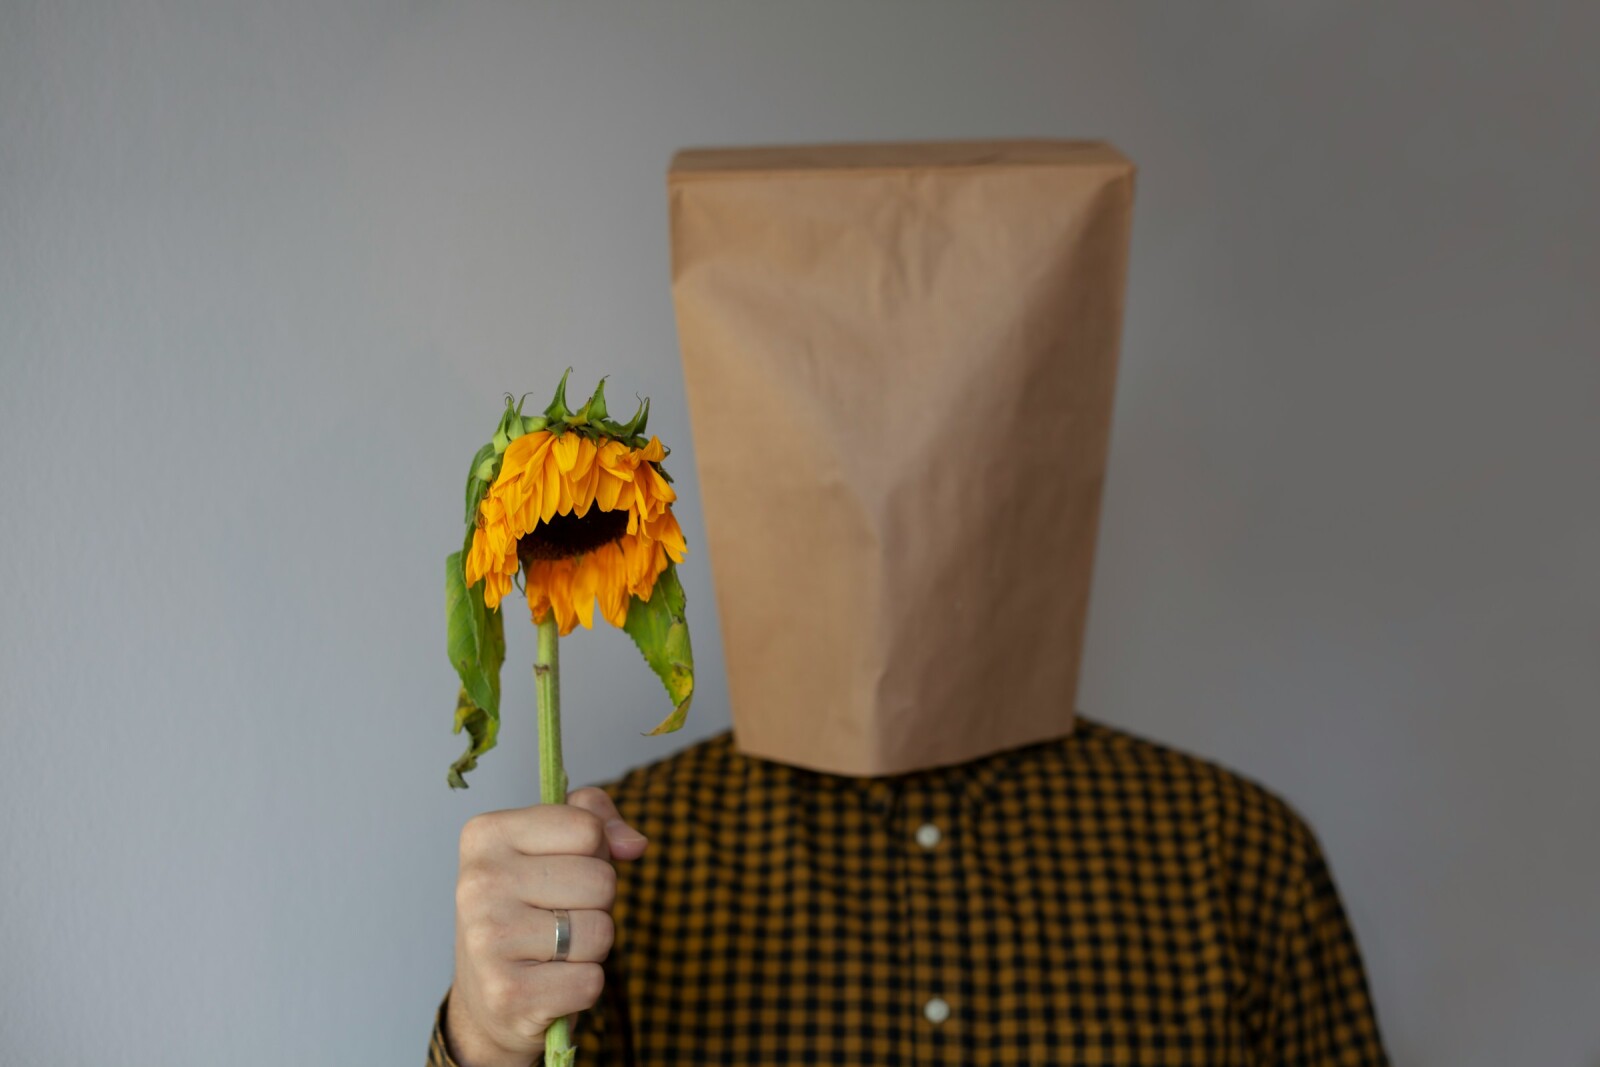 парень с цветком и пакетом на голове